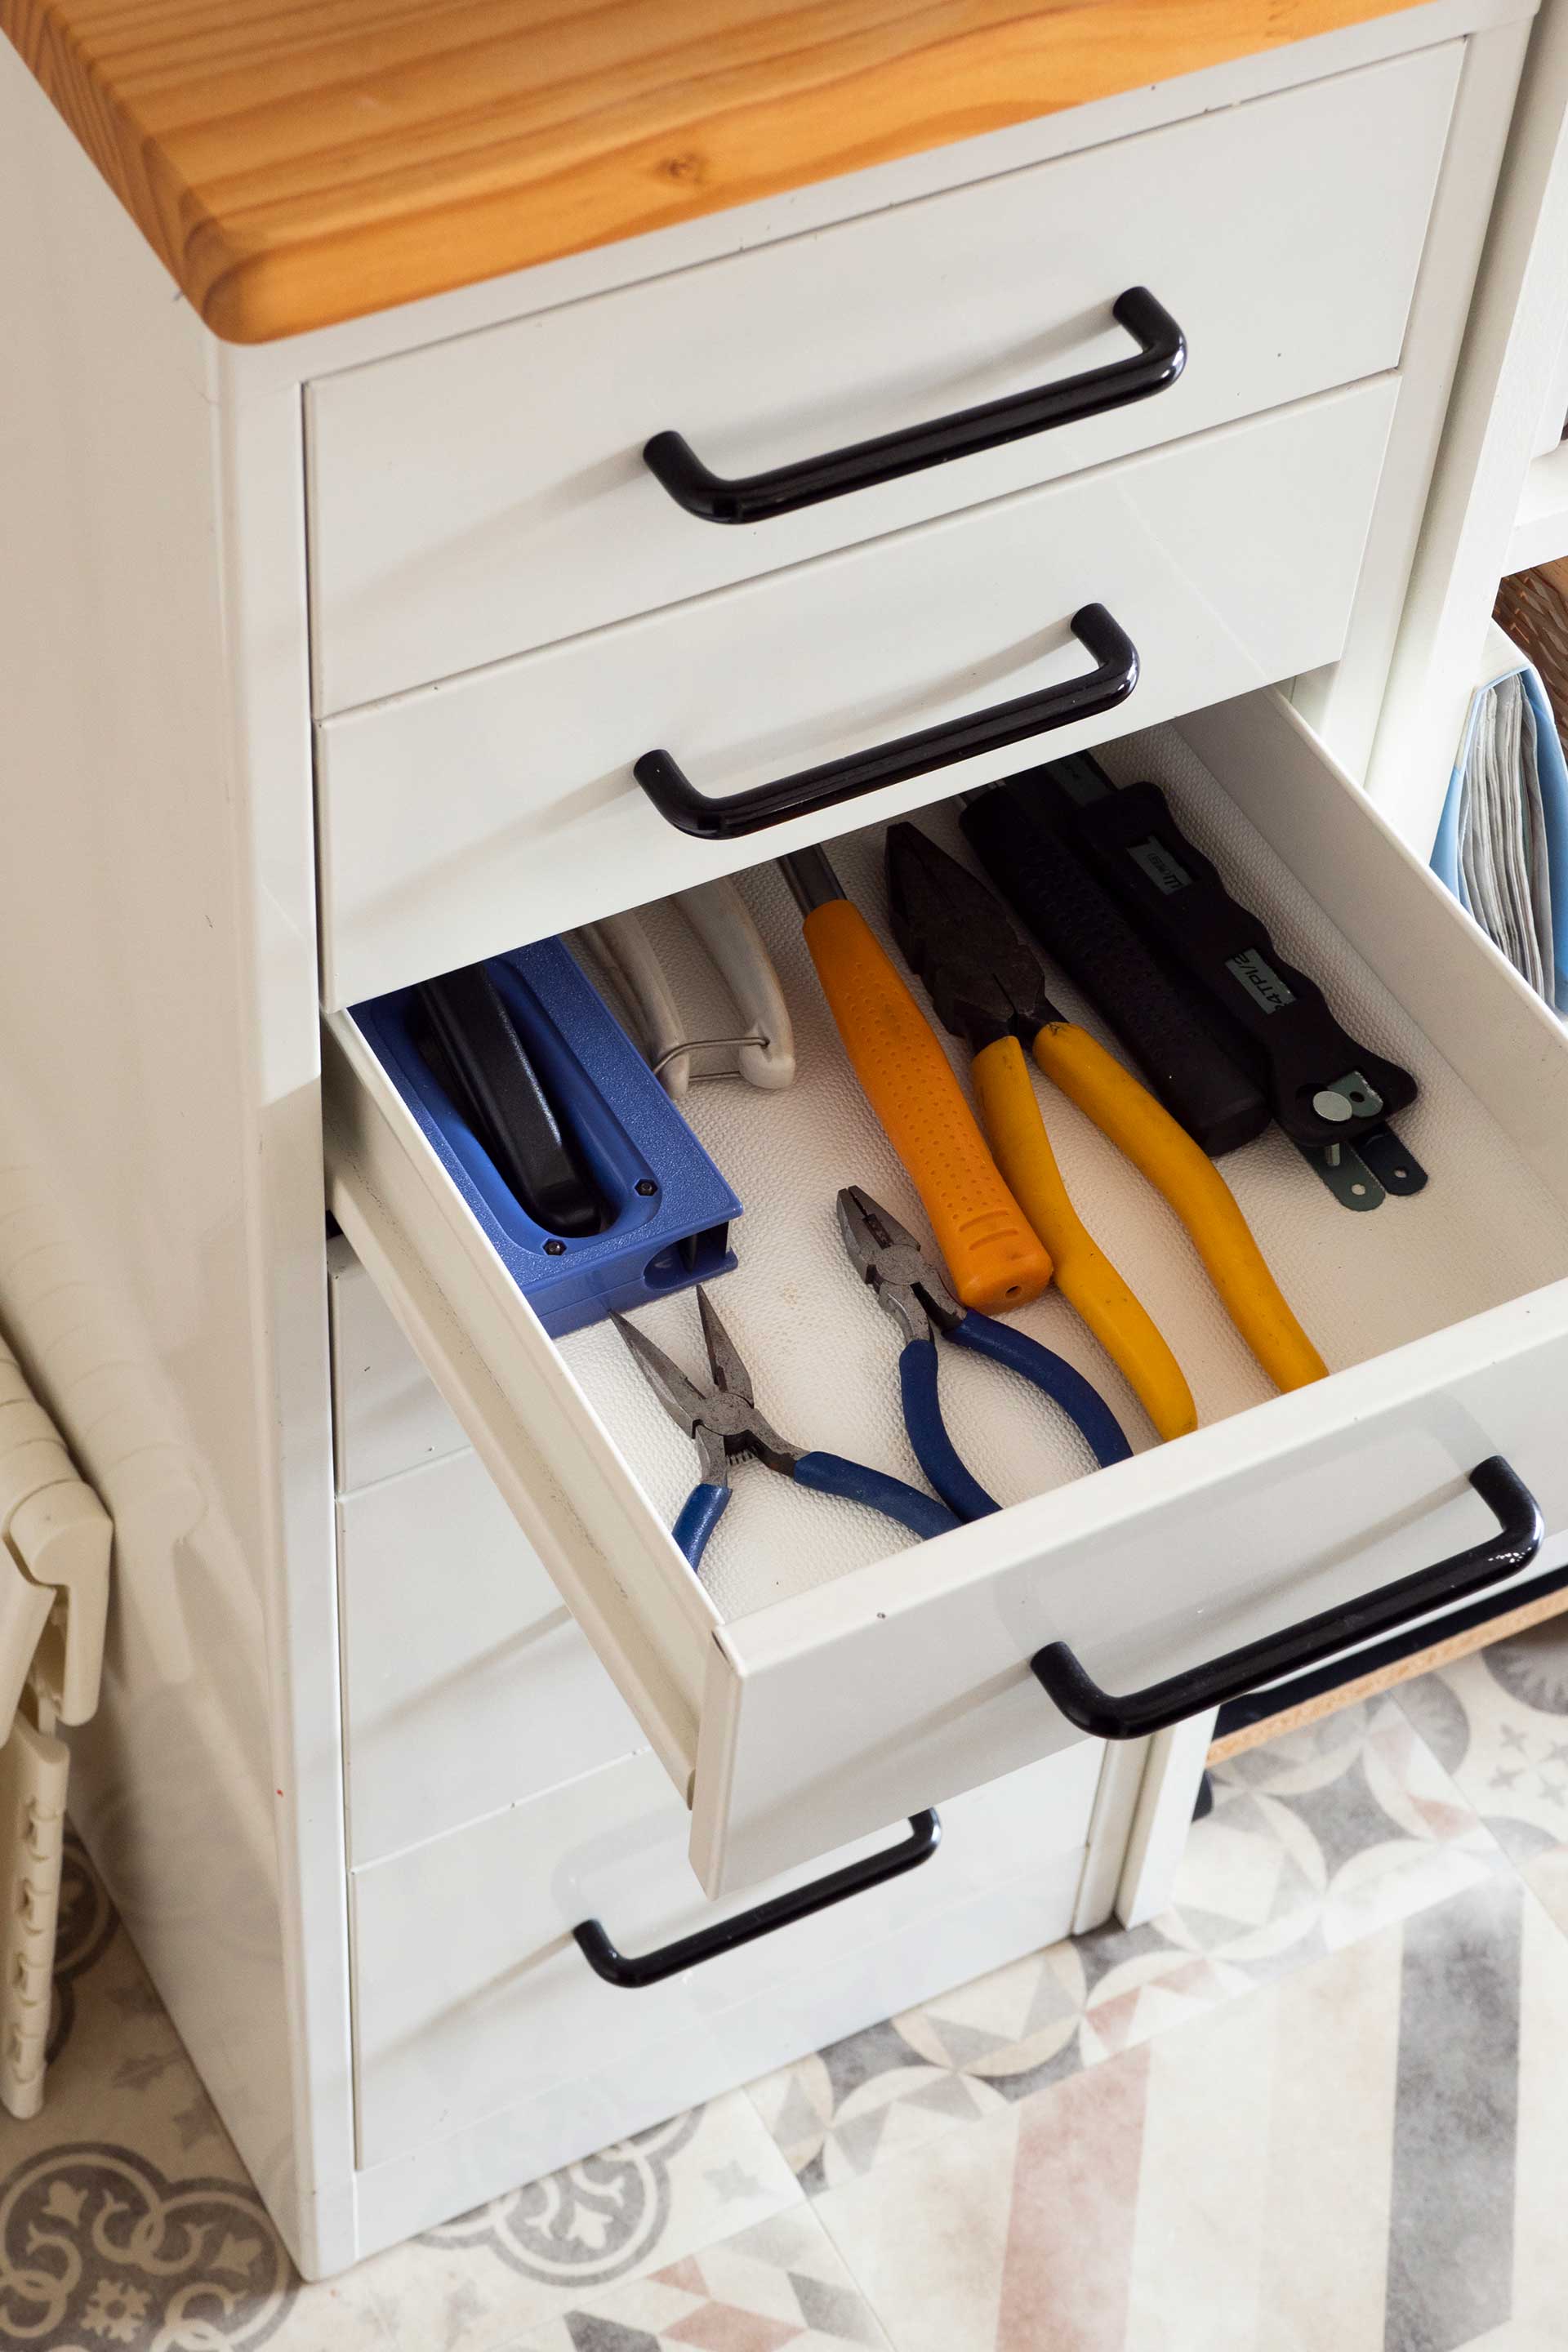 よく使う工具をキッチンの取り出しやすい位置に。ゆるんだネジなどにさっと対応できる。